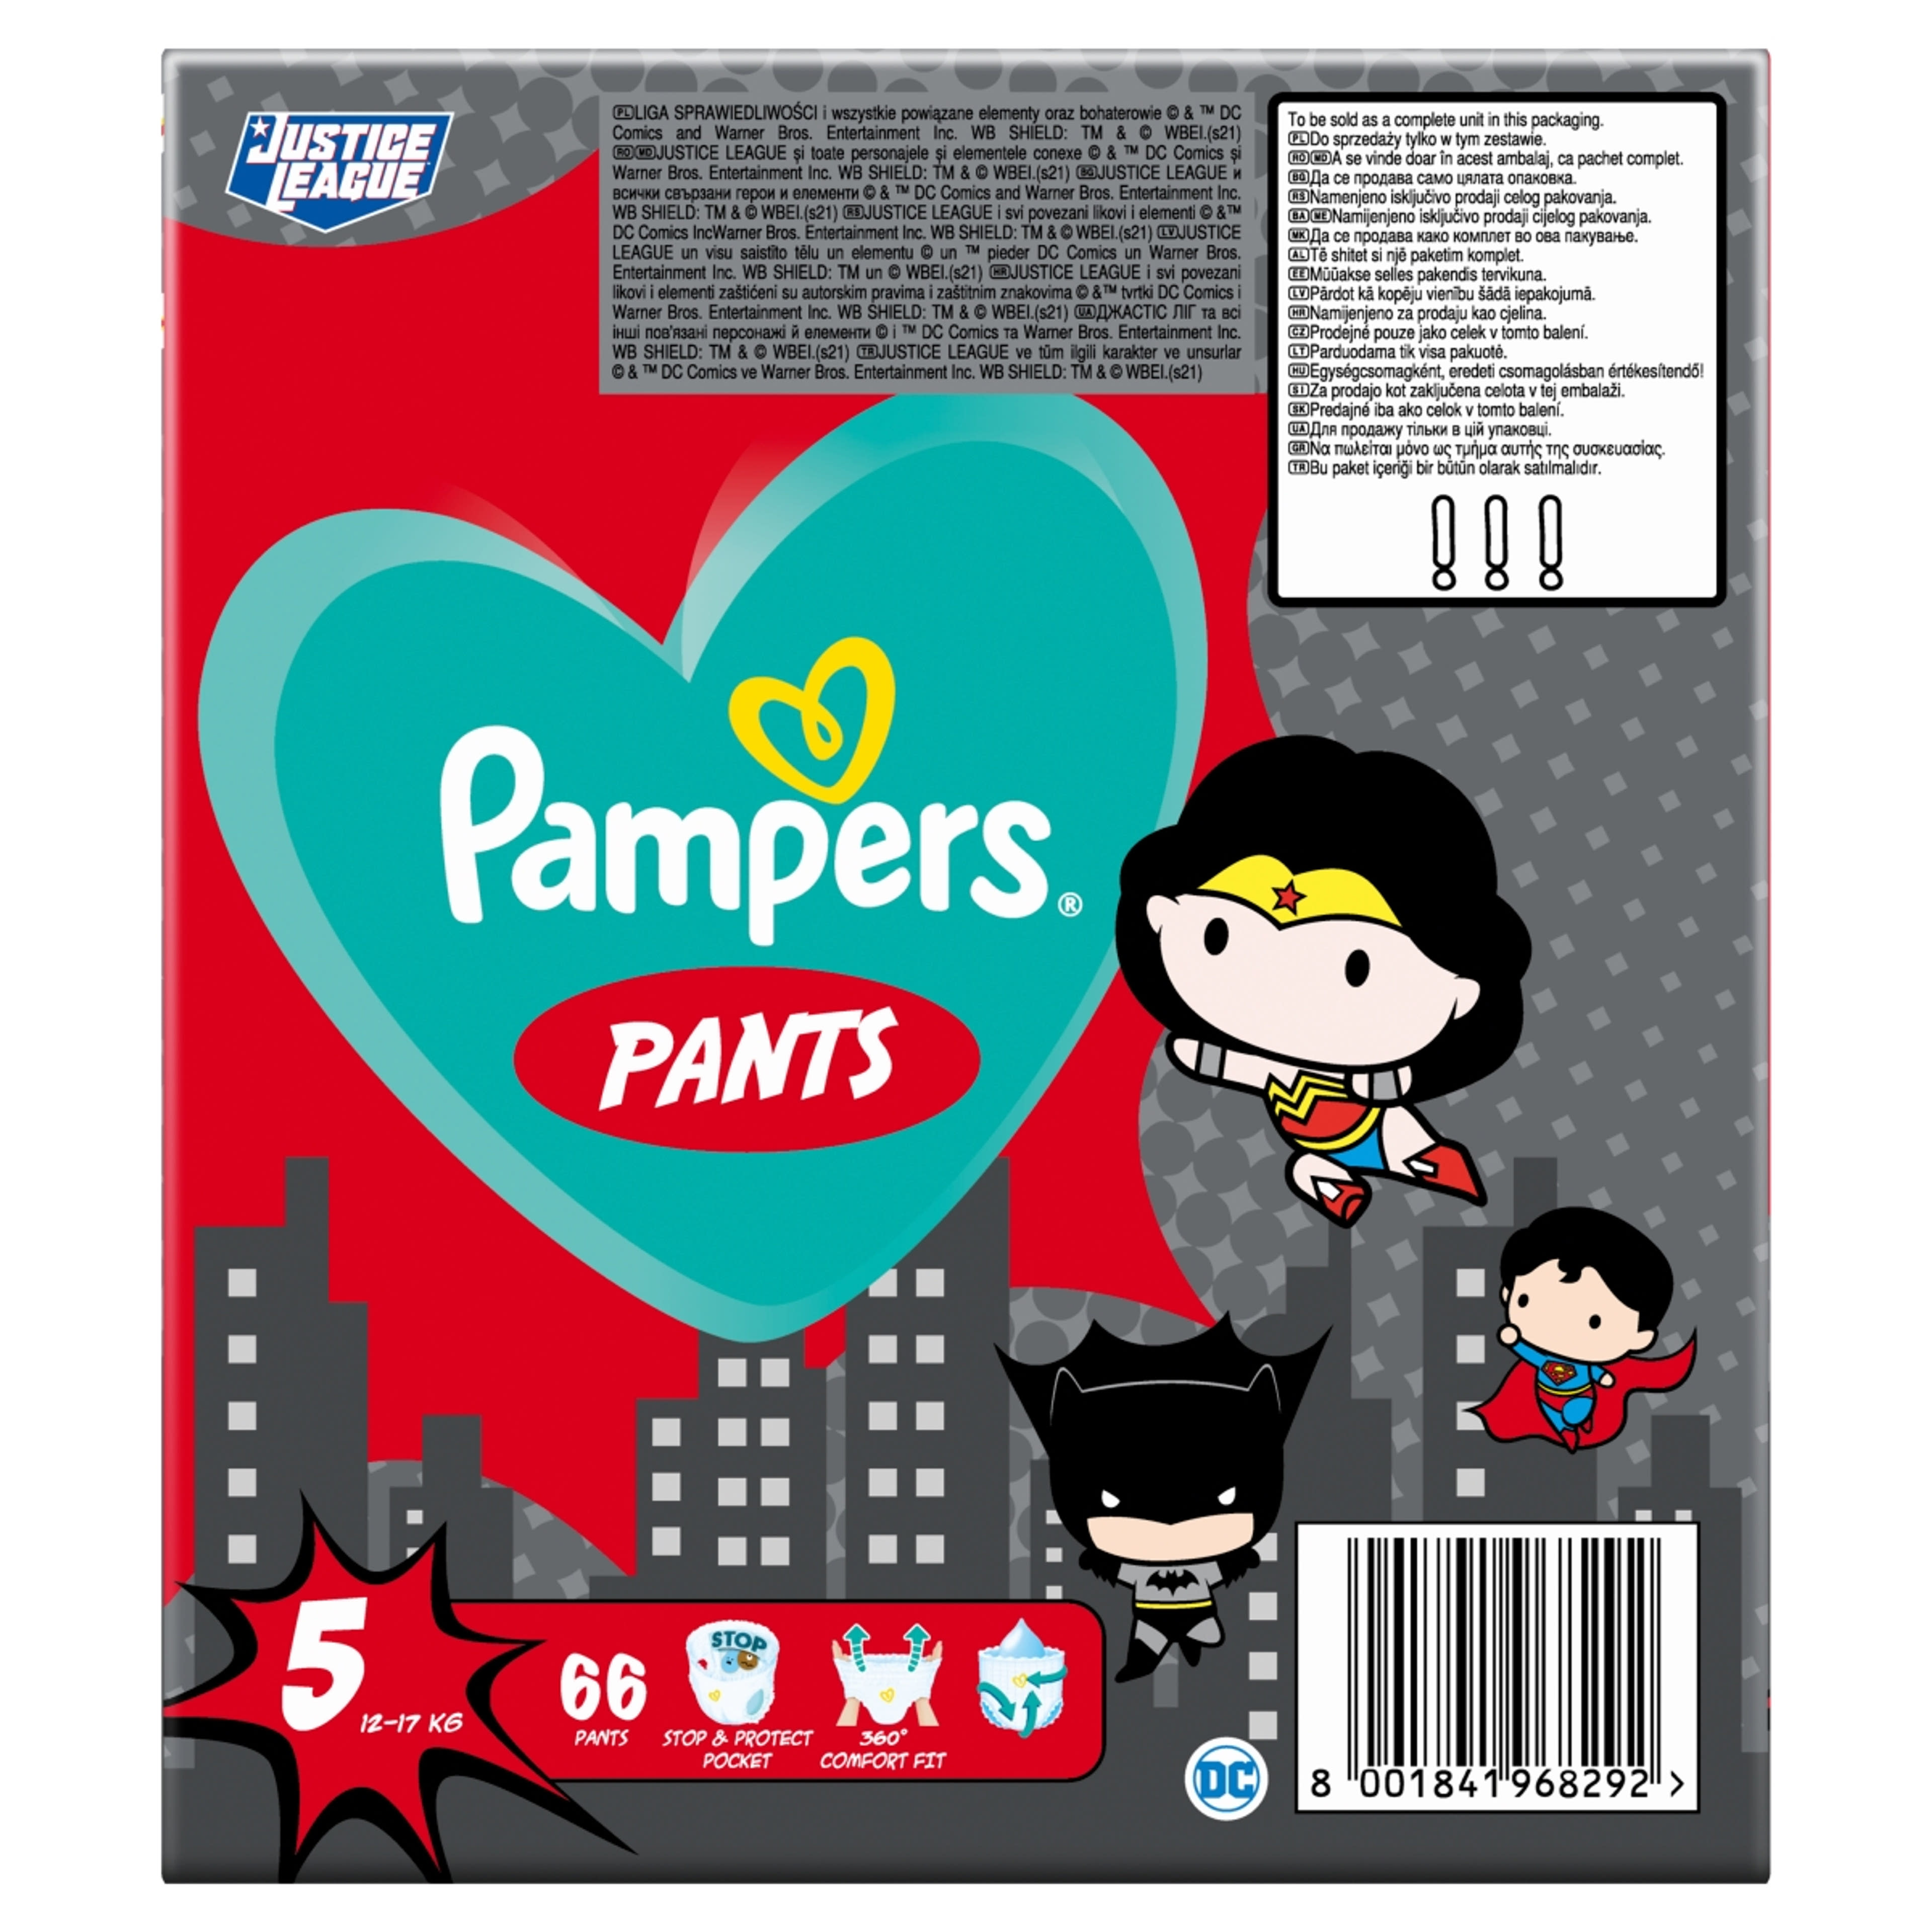 Pampers Pants Giant Pack+ Superheroes 5-ös 12-17 kg - 66 db